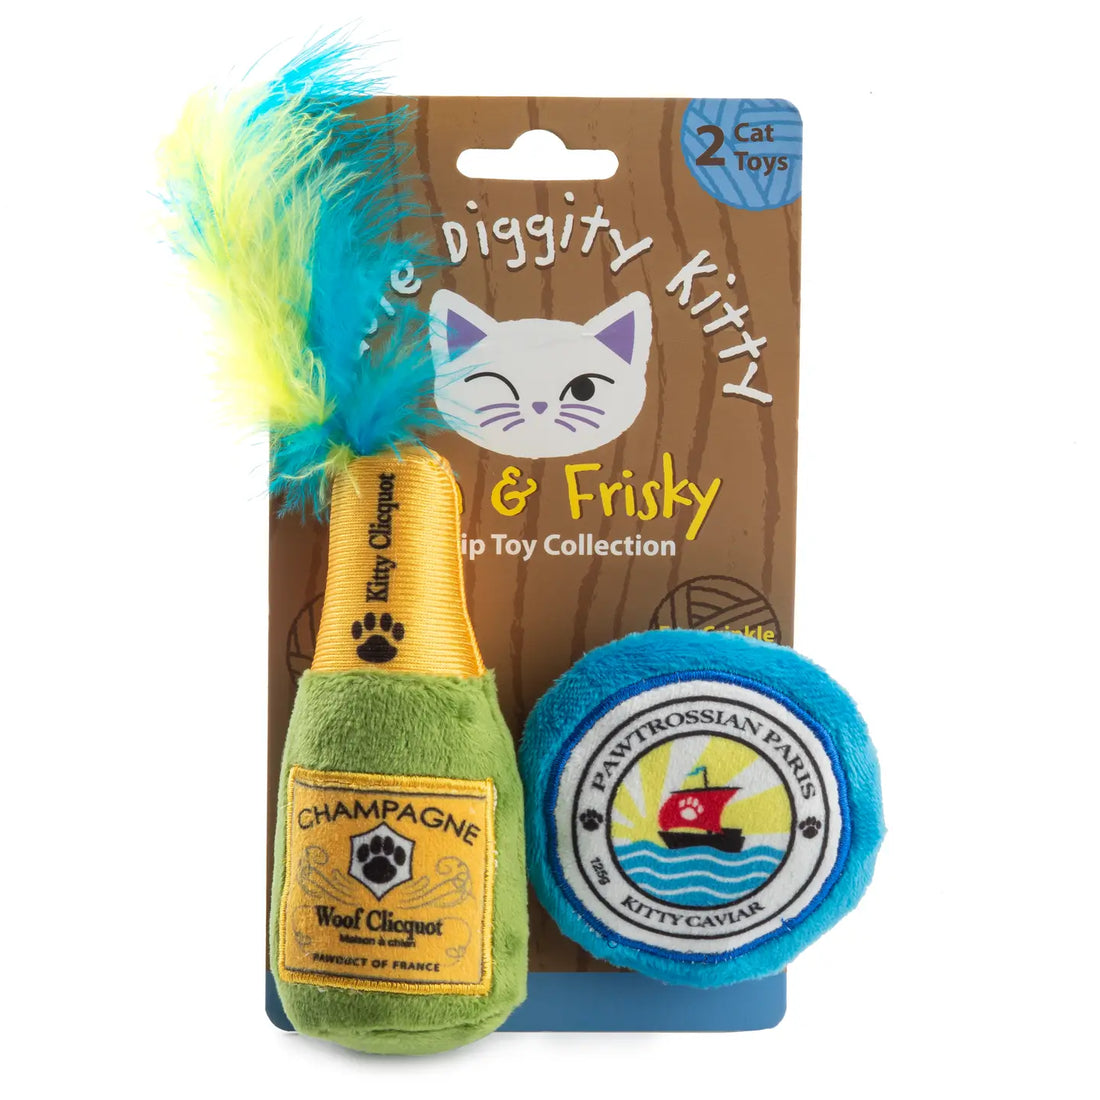 Kitty Clicquot (bouteille et caviar) | Jouets à base d'herbe à chat